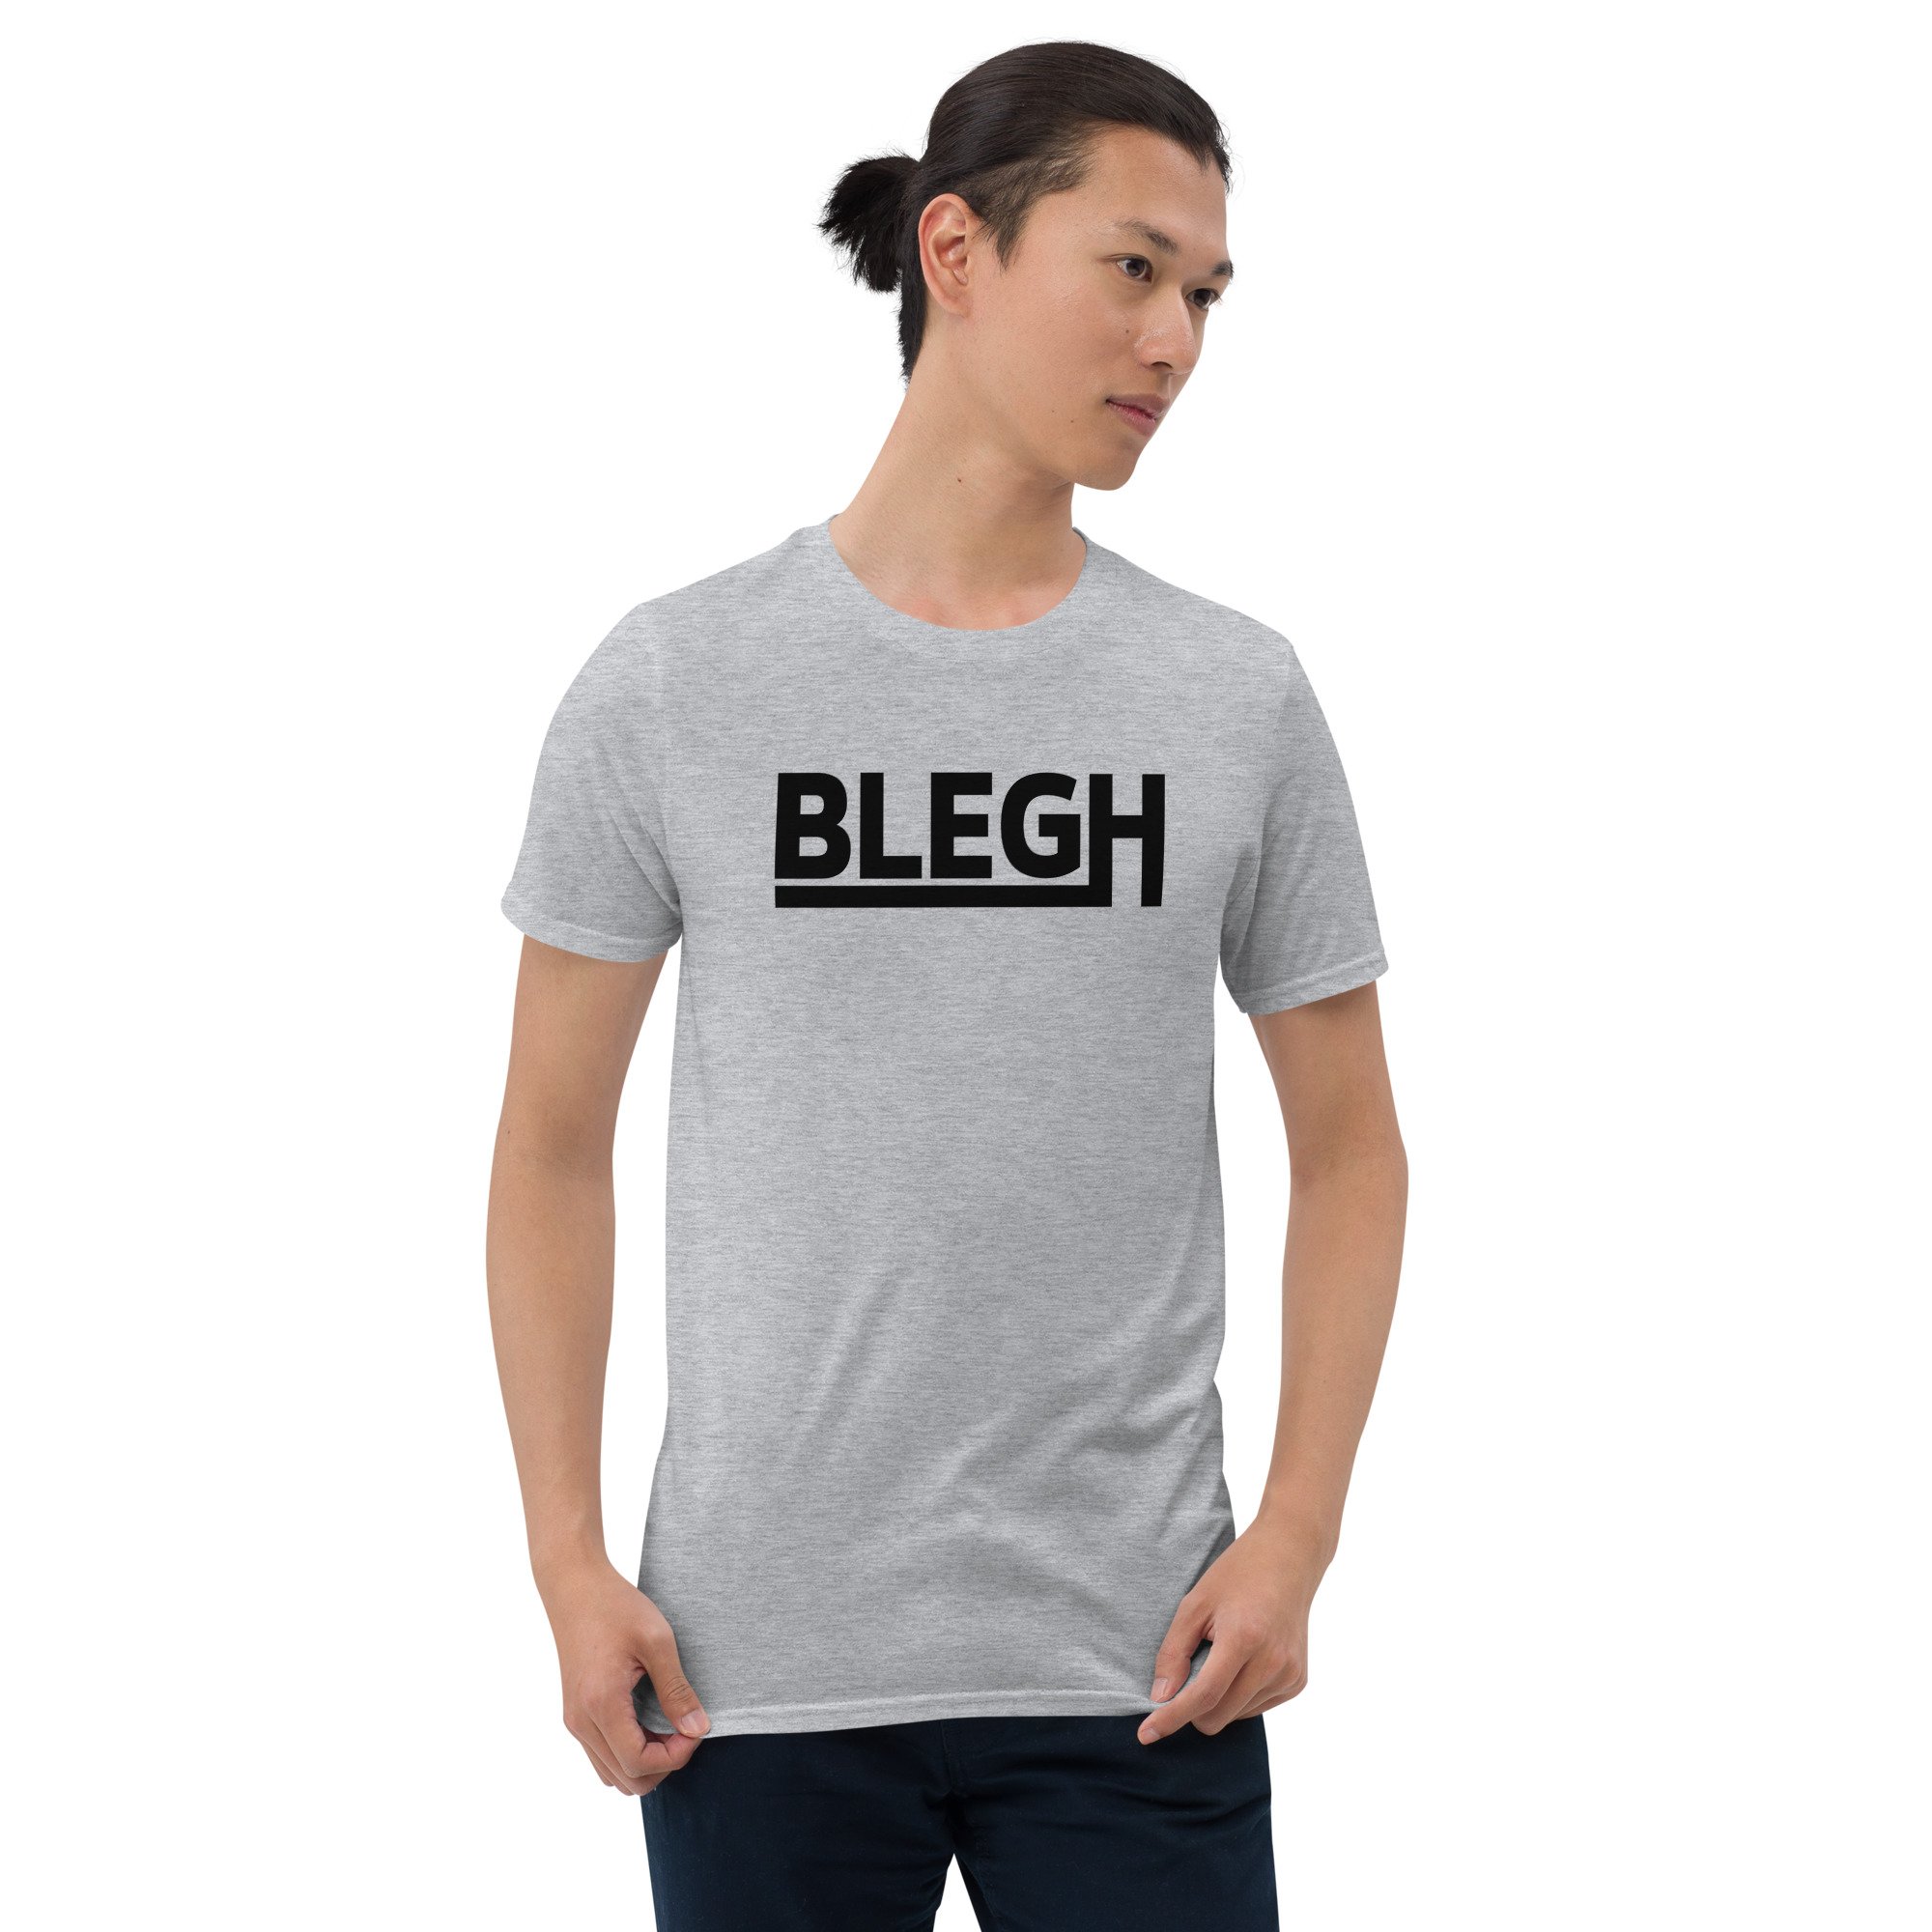 CLASSIC BLEGH SKATE T-SHIRT